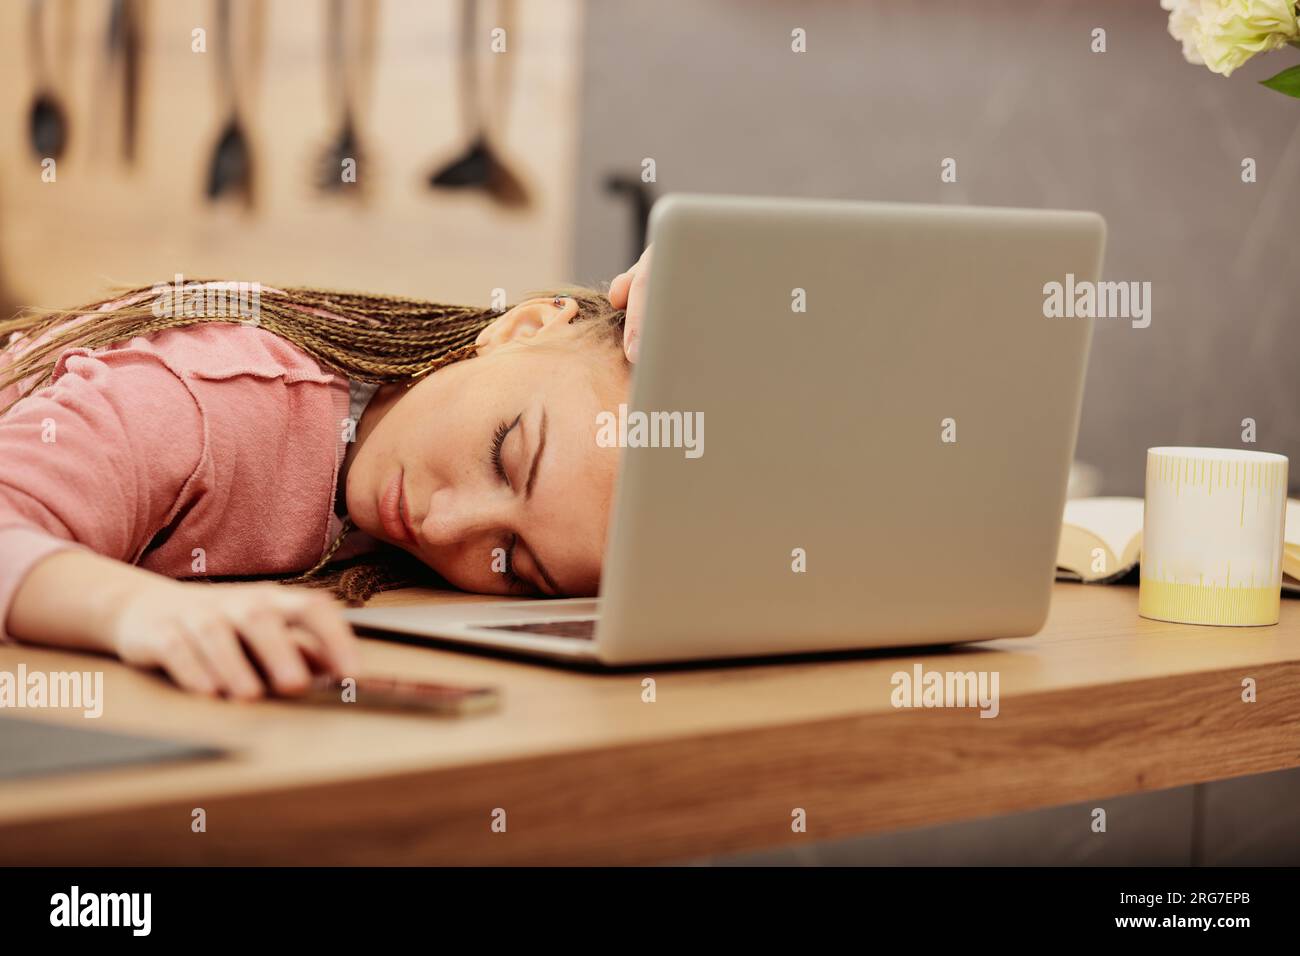 Sie schläft auf ihrem Laptop in der Küche und eine müde Frau mit Boxgeflechten ruht sich nach harter Arbeit oder nach dem Lernen aus Stockfoto